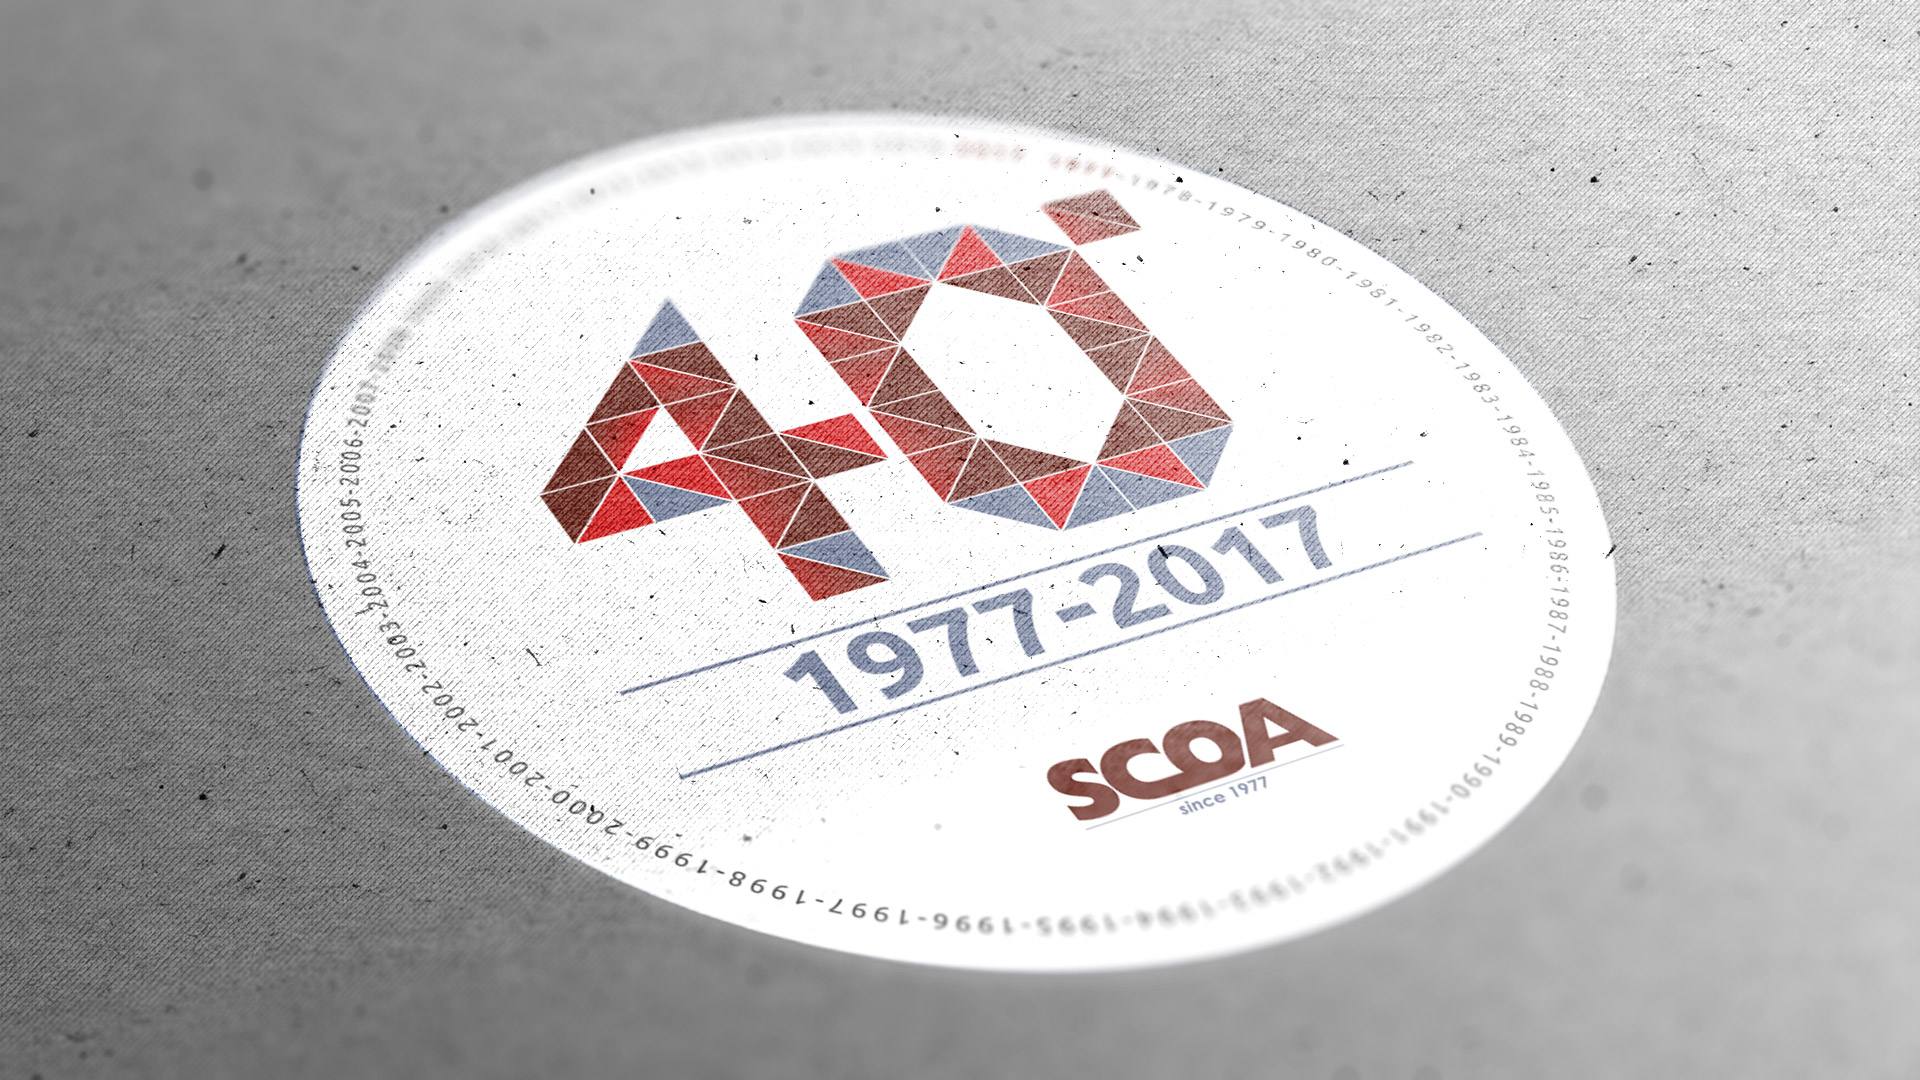 SCOA festeggia il 40esimo anniversario